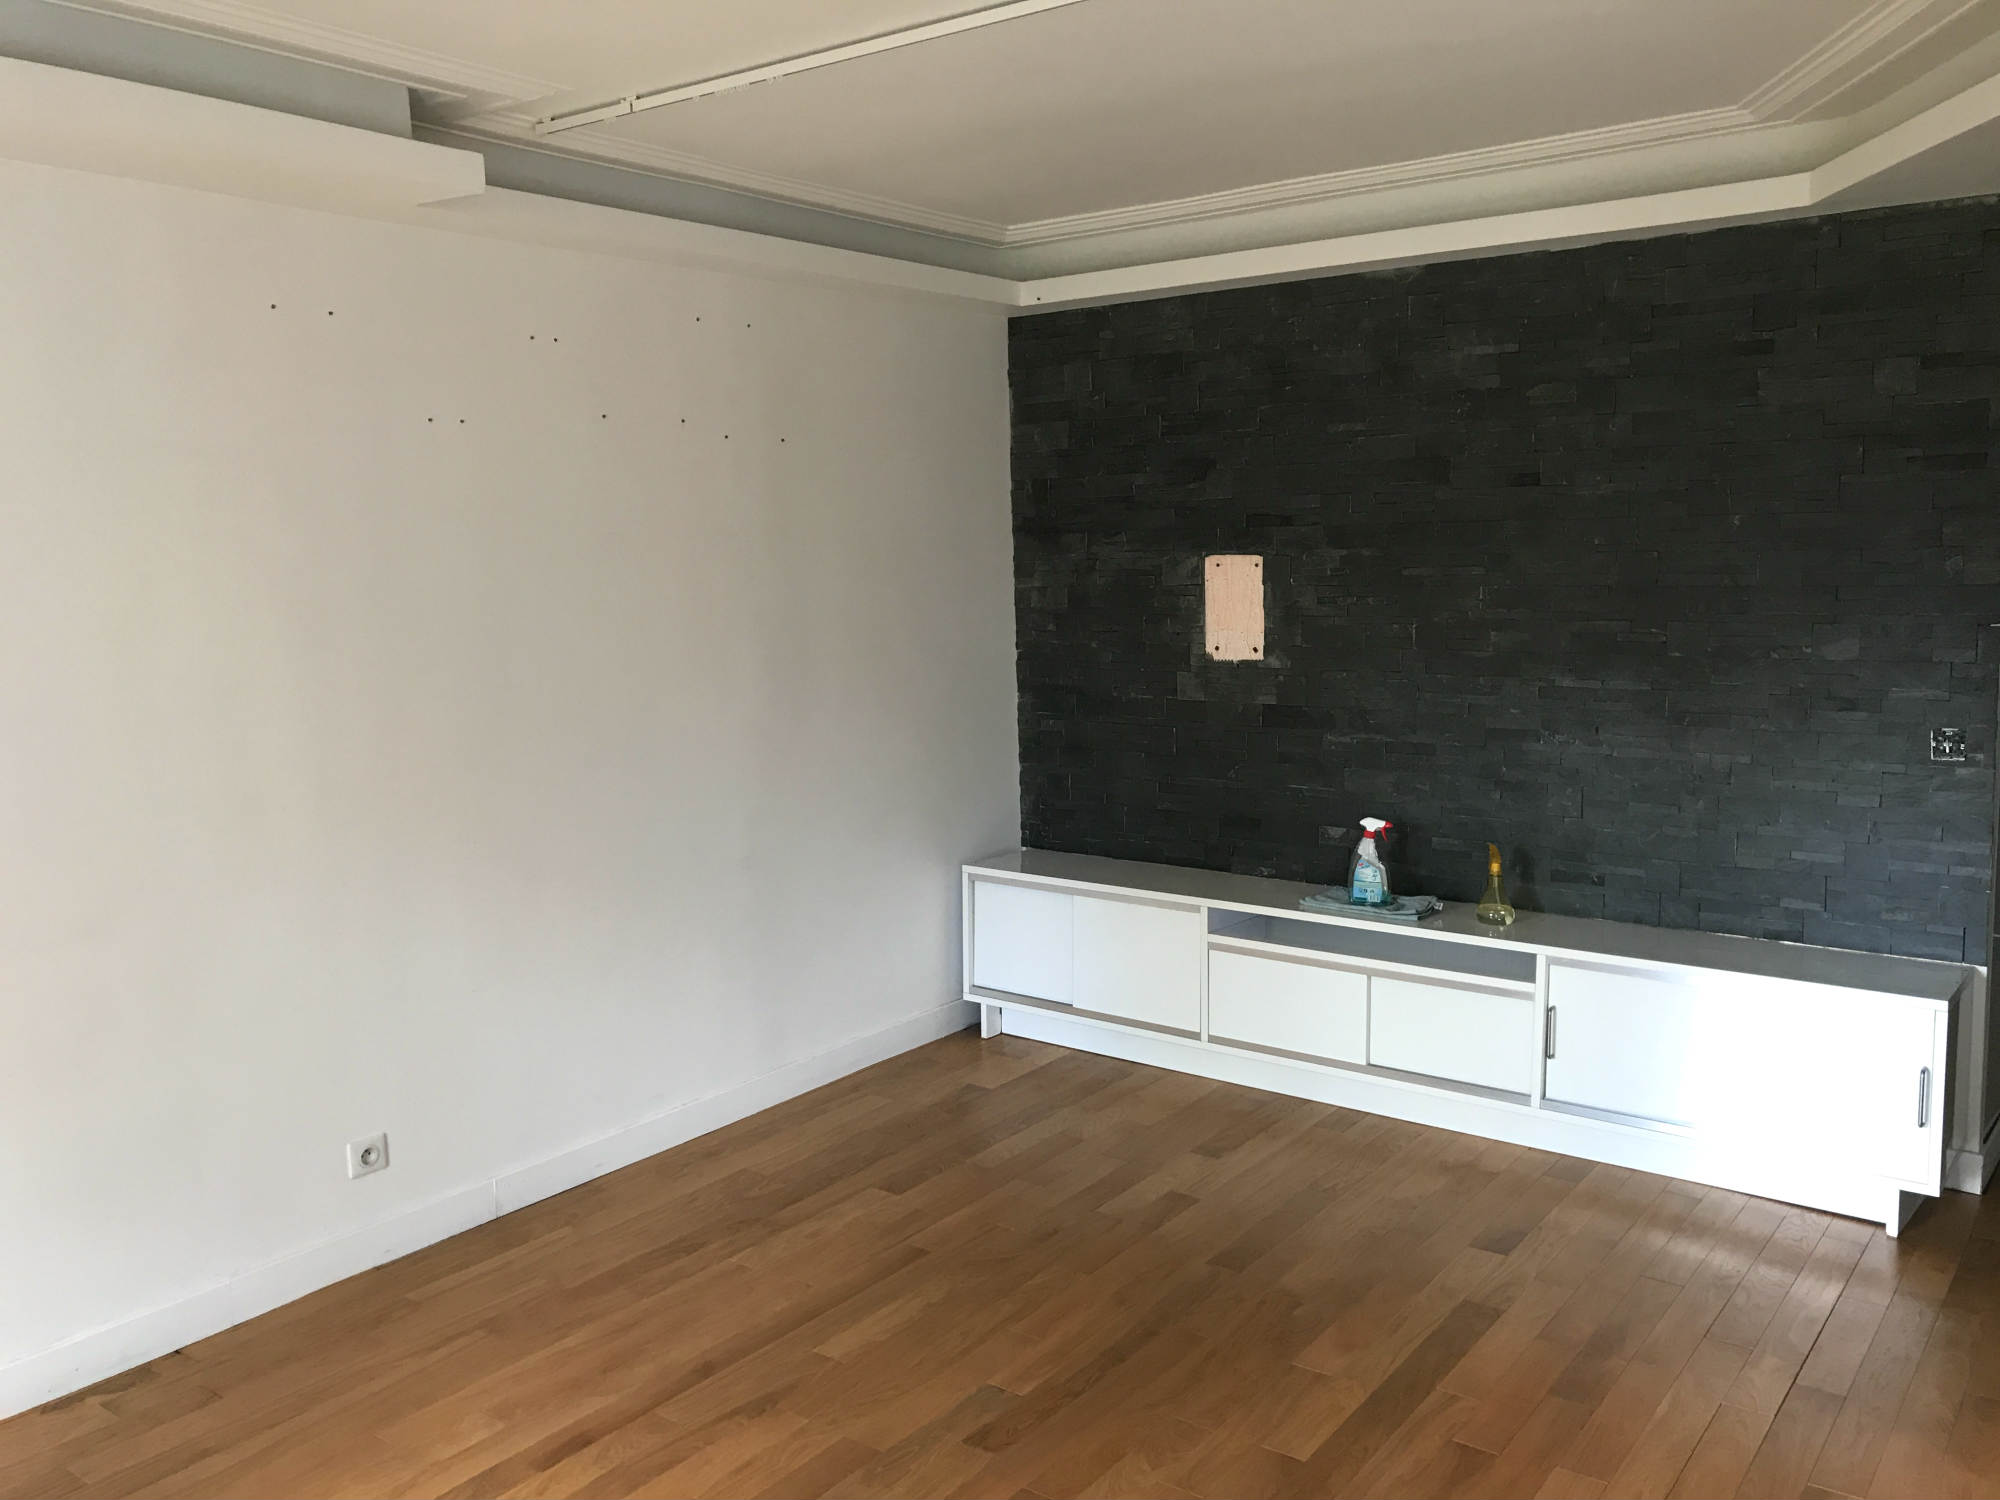 2017 travaux renovation appartement F3 levallois perret_Eolh btp france 5_BD